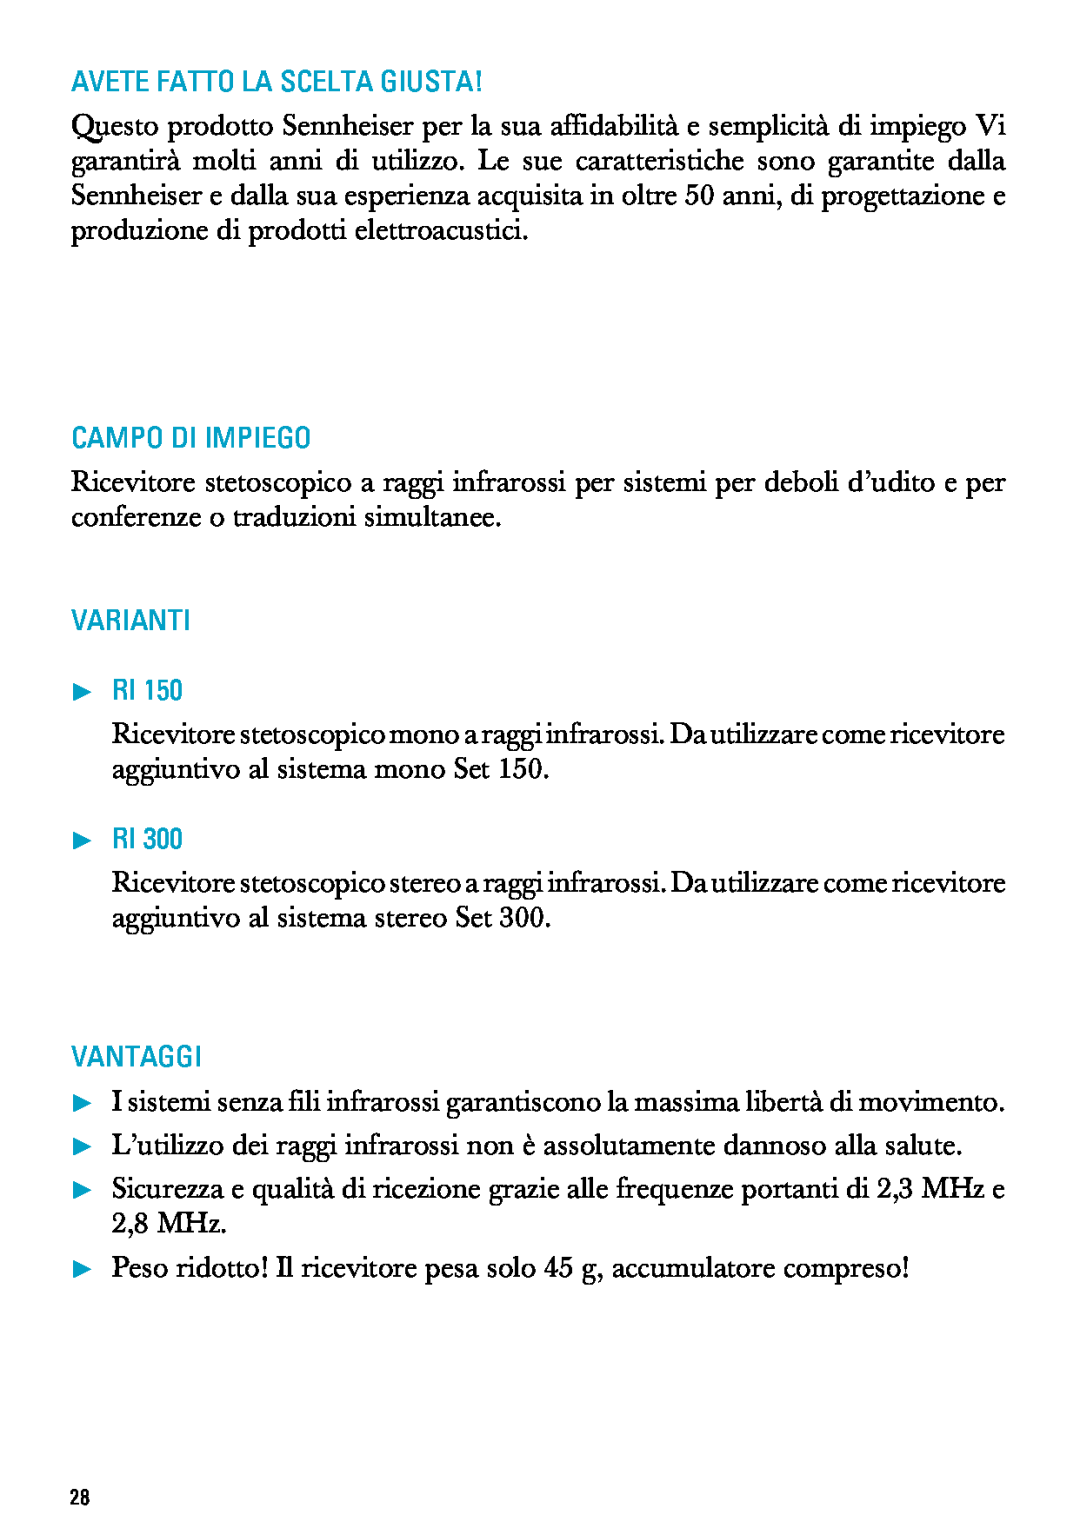 Sennheiser RI 300 manual Avete Fatto La Scelta Giusta, Campo Di Impiego, Varianti Pri, Vantaggi 